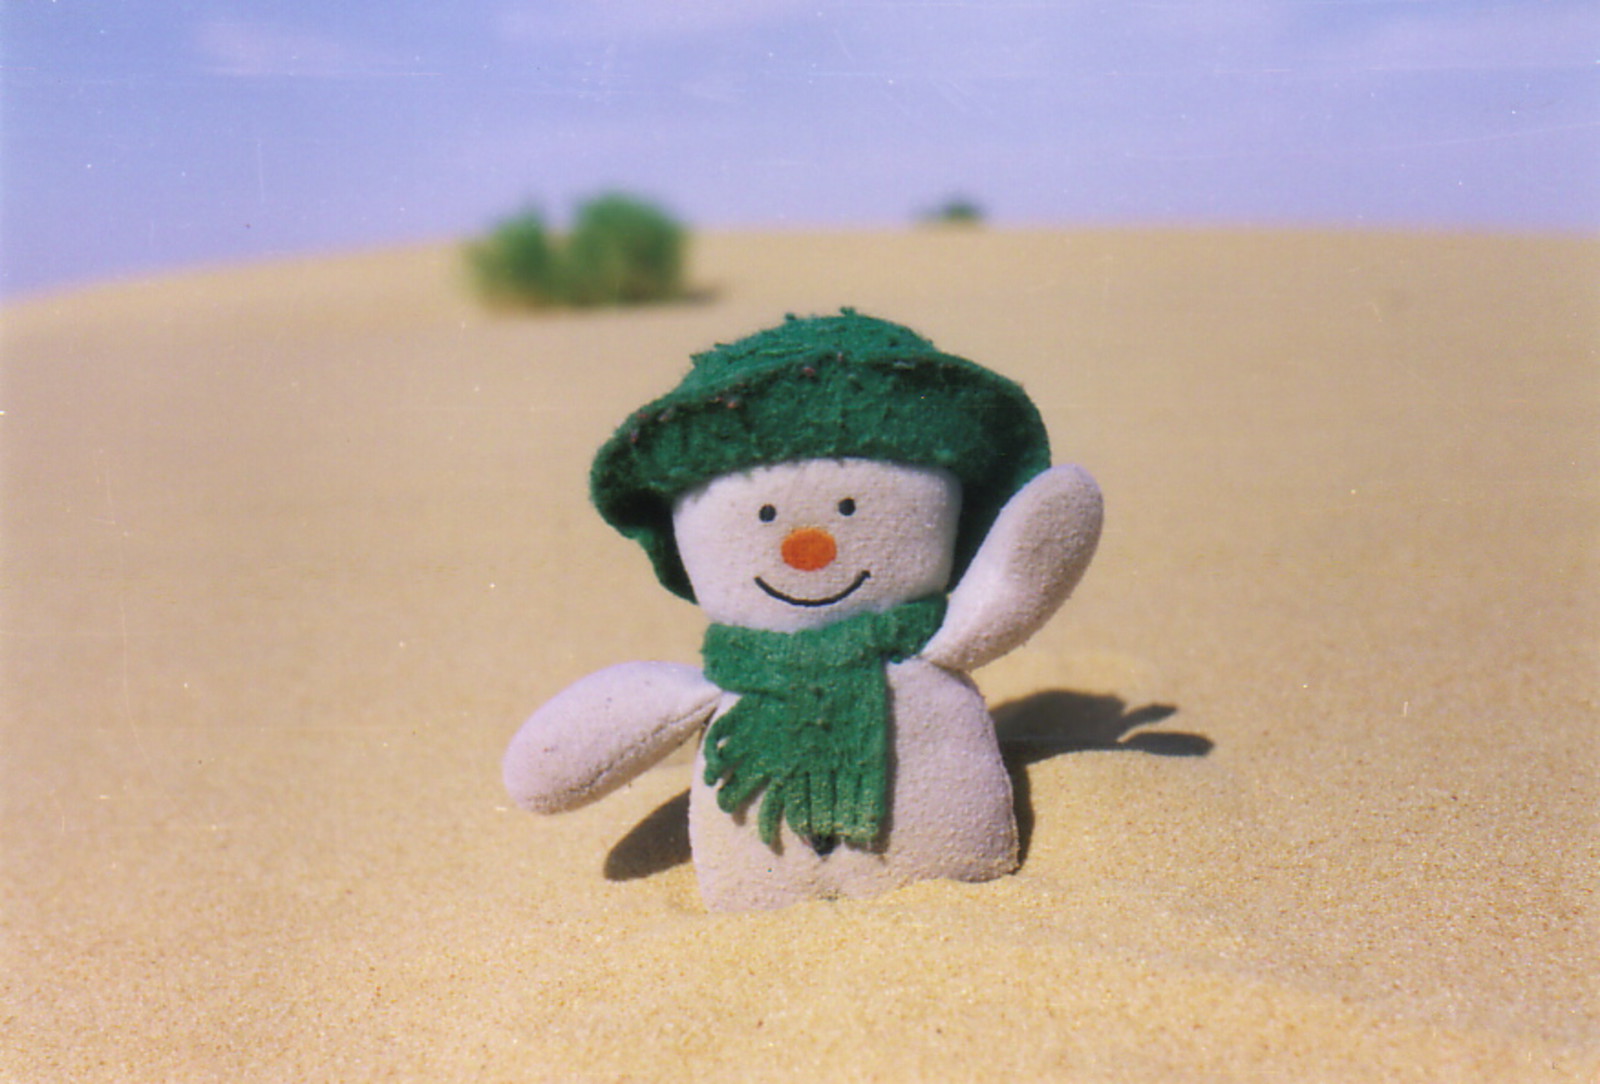 A snowman in the desert